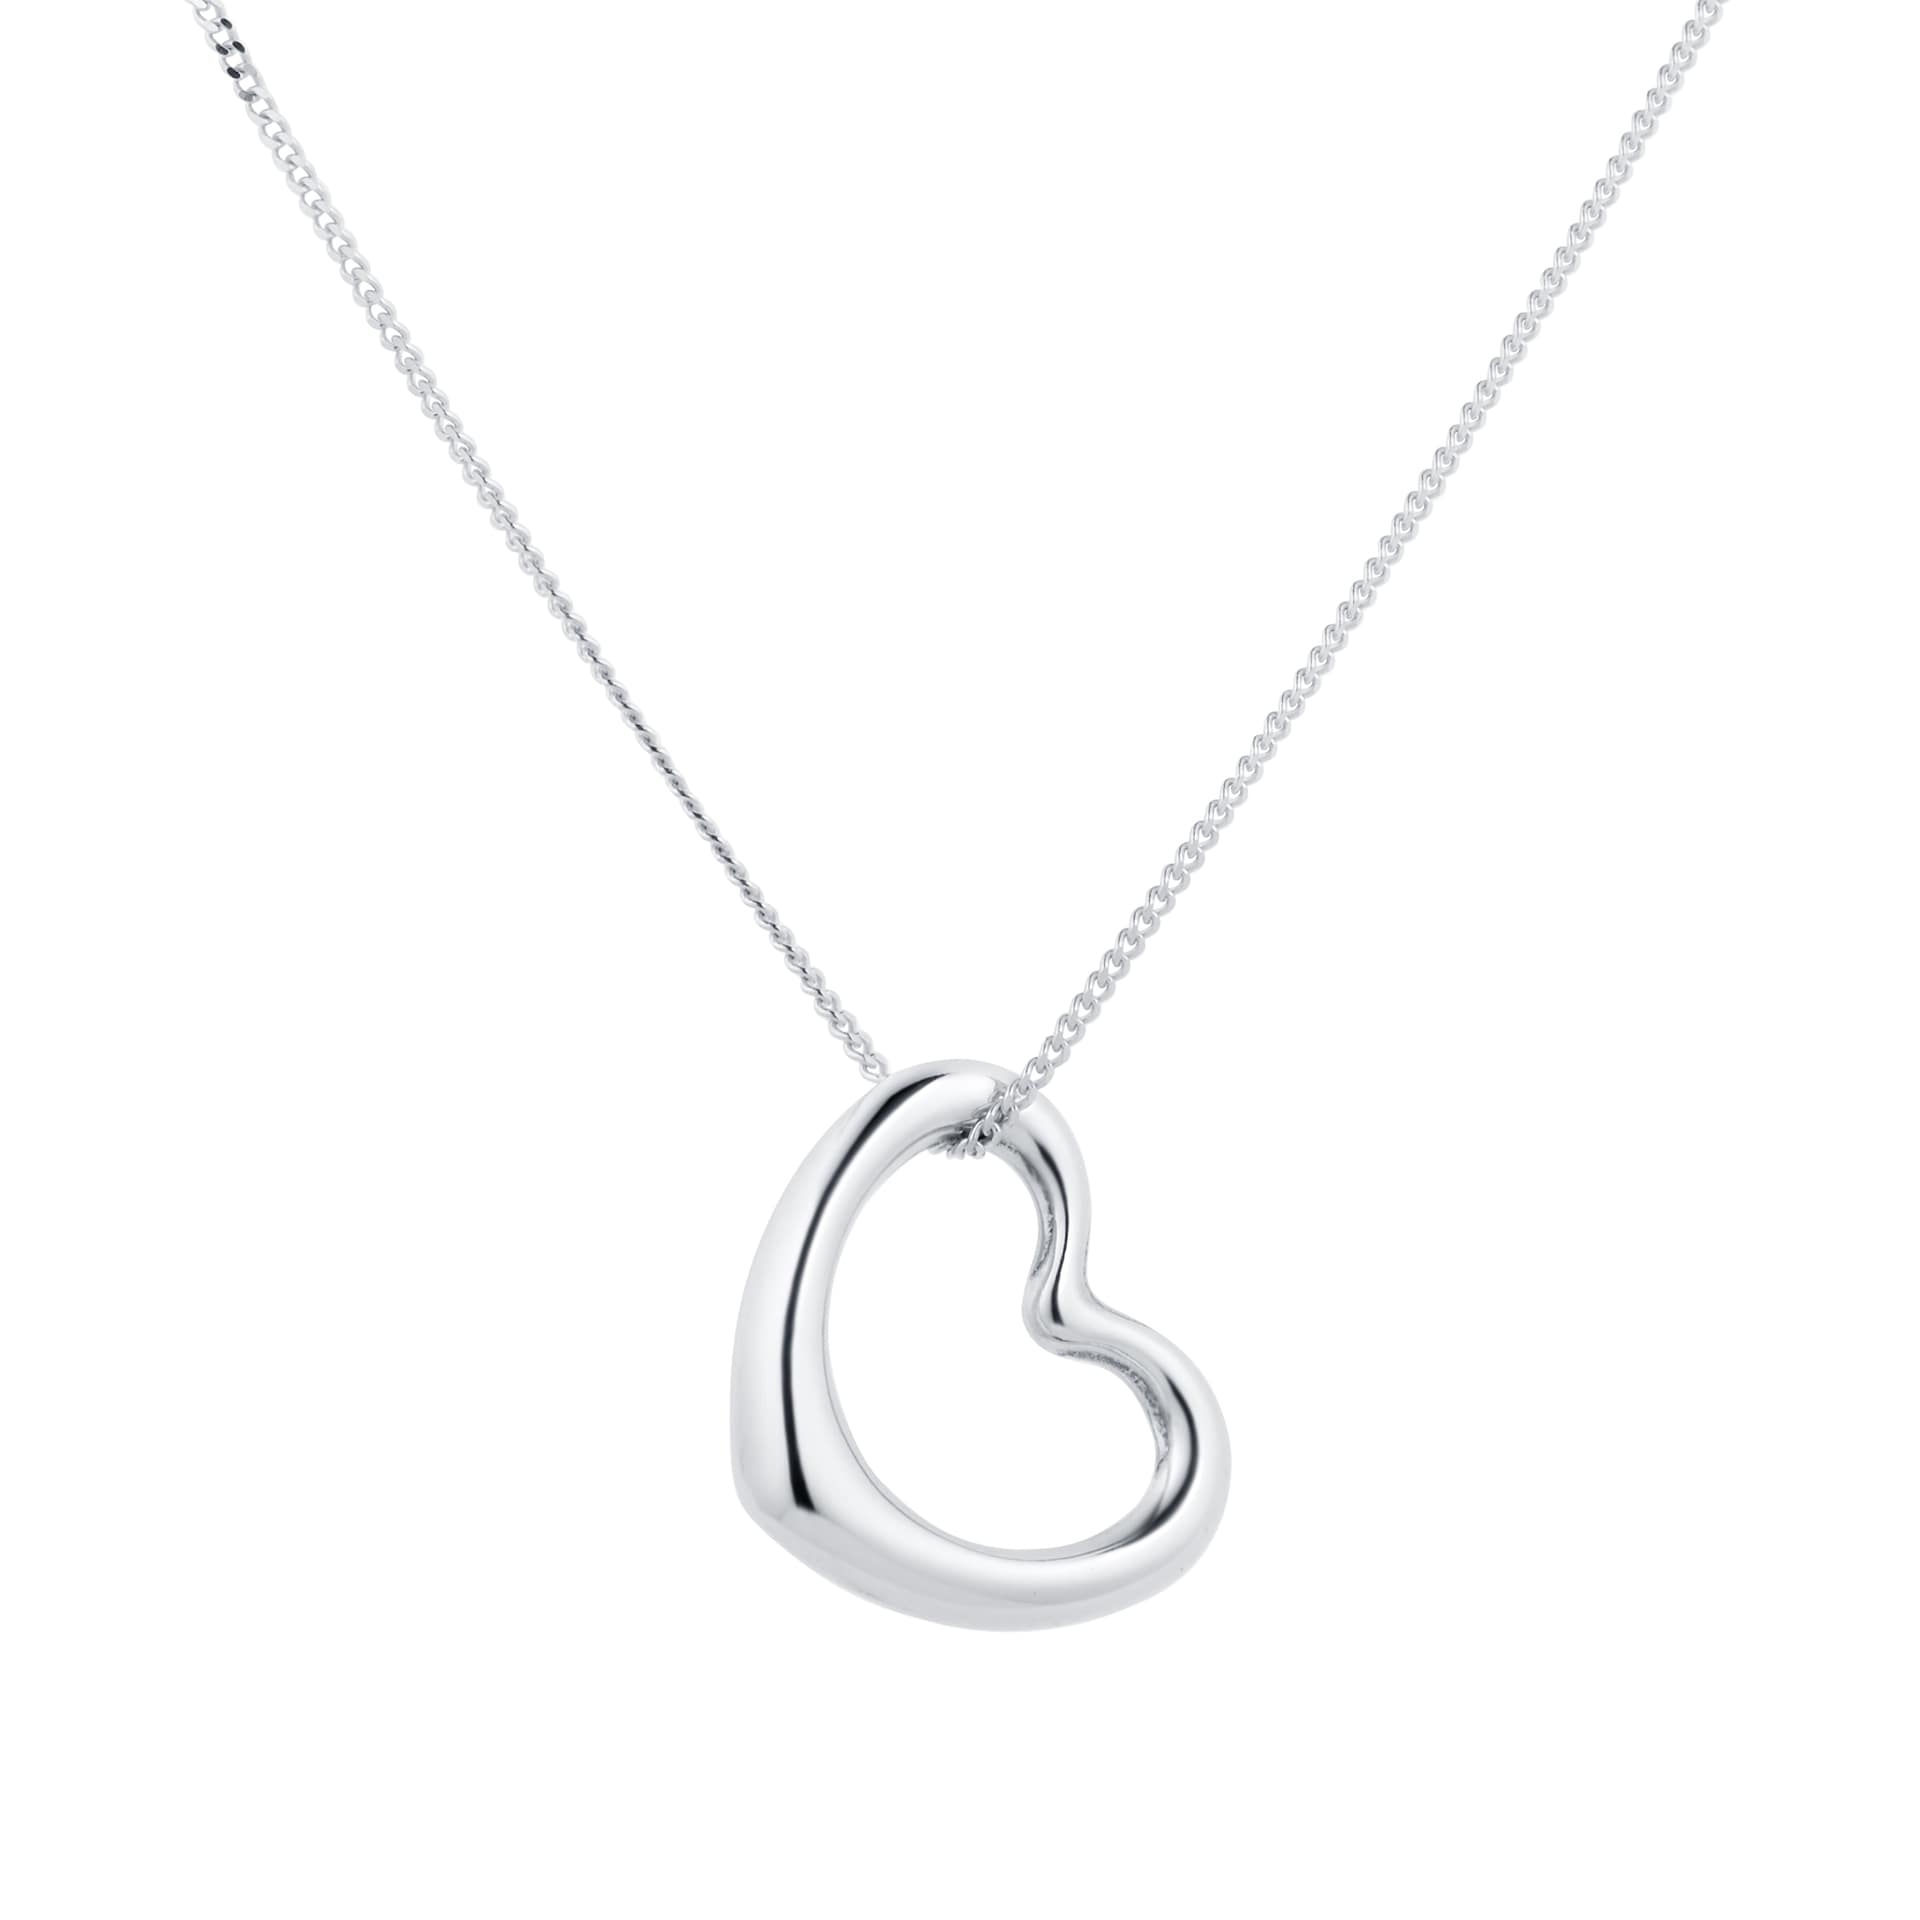 Necklaces, Silver & Gold Necklaces, Pendants & Chains for Men & Women ...